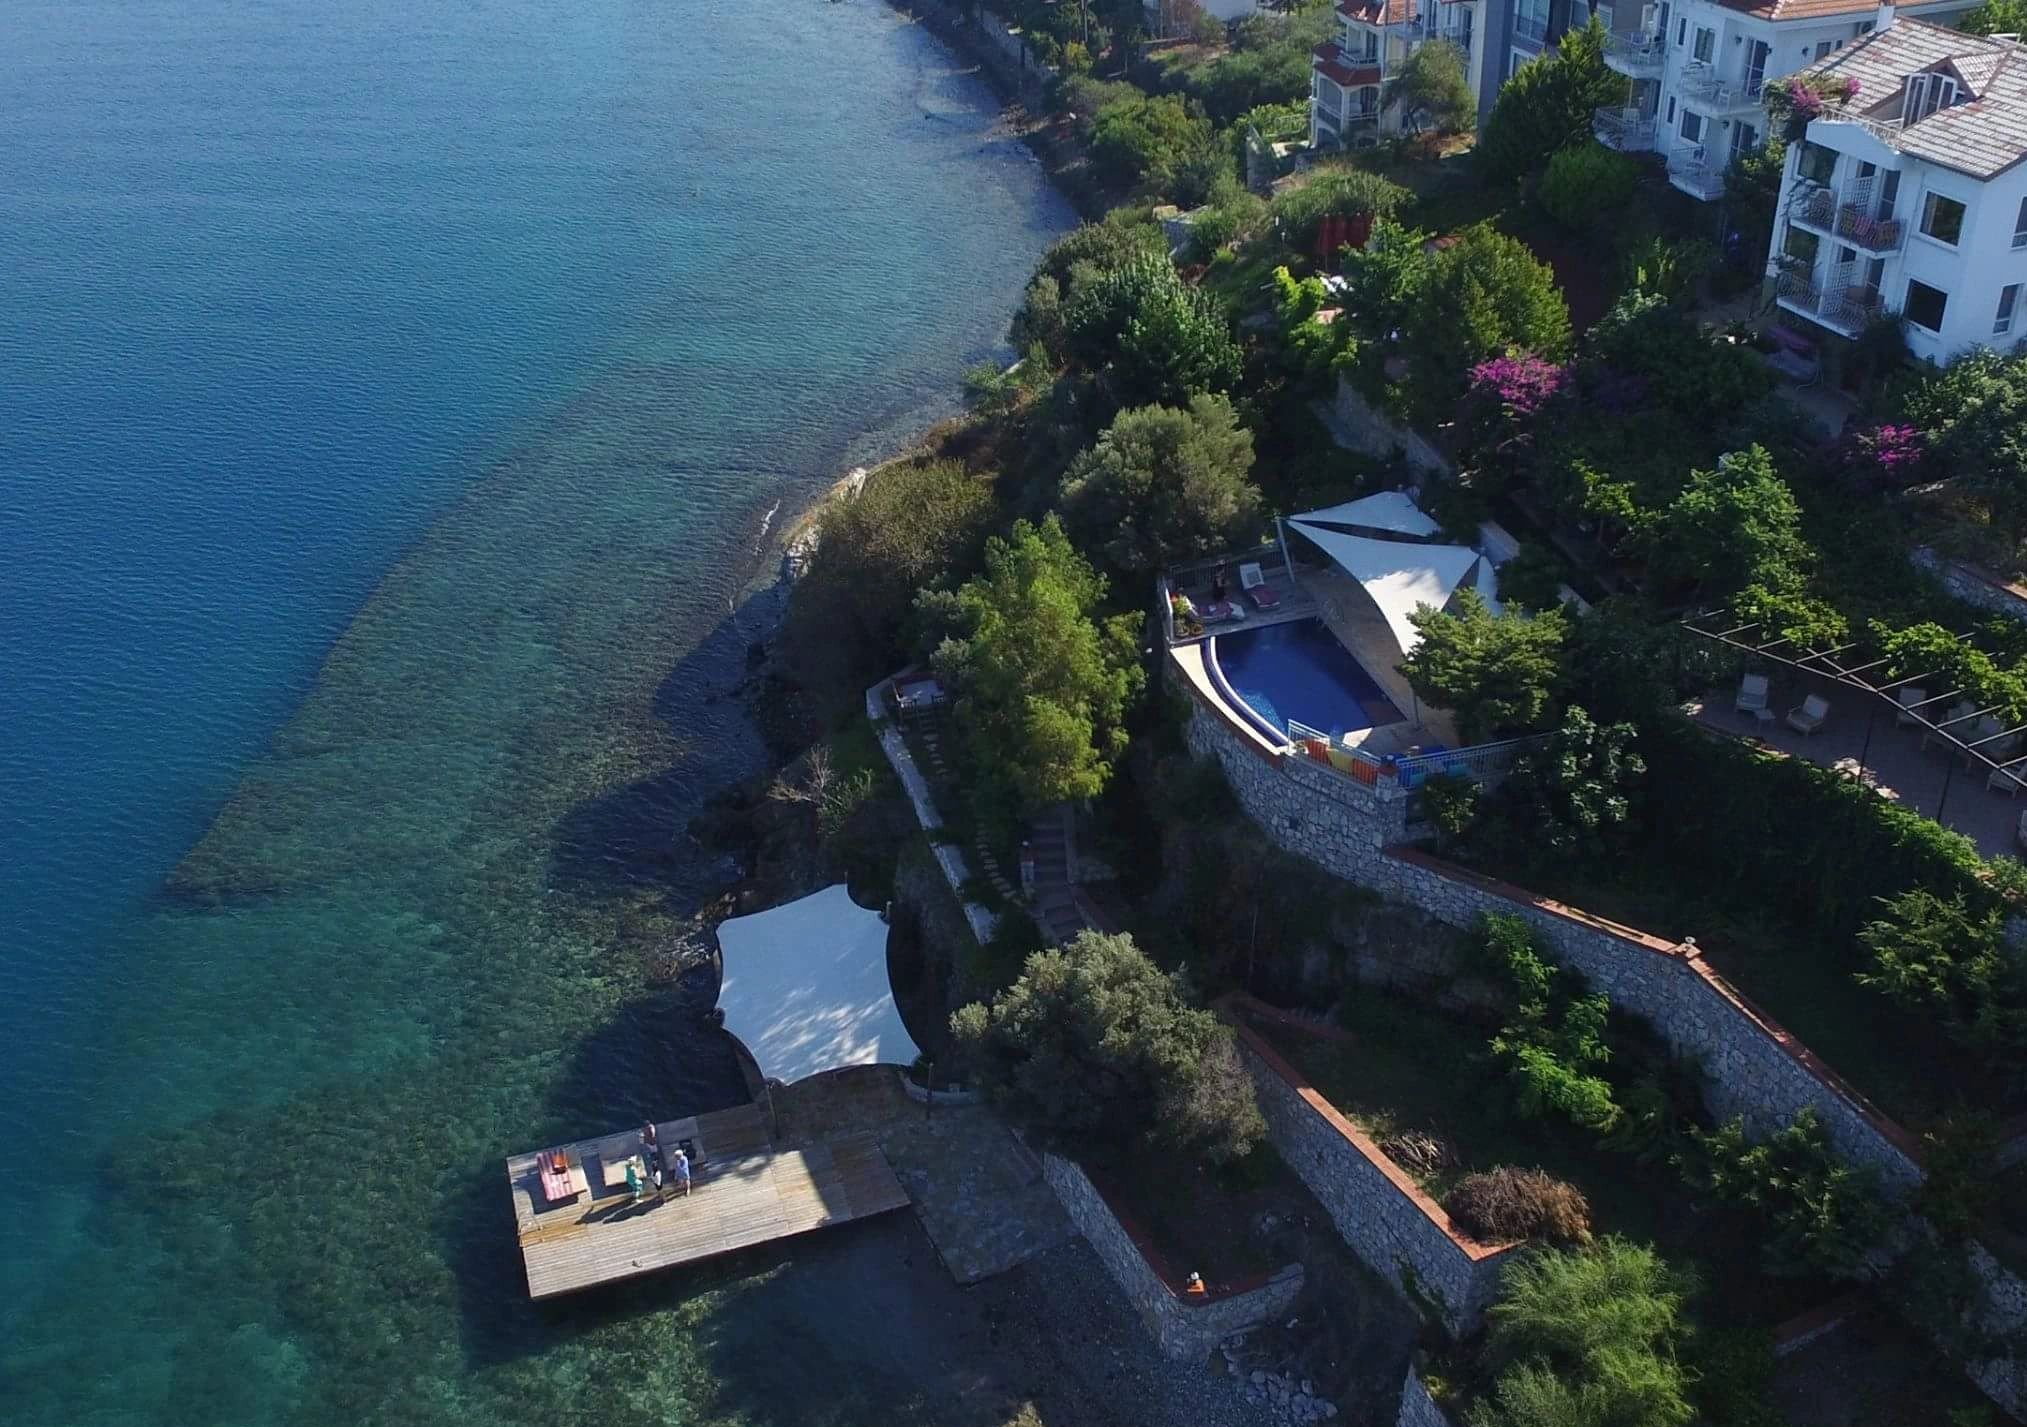 Ece Butik Otel Fethiye Şövalye Adası 'nda 1994 yılından beri hizmet veren bir ada oteli. 